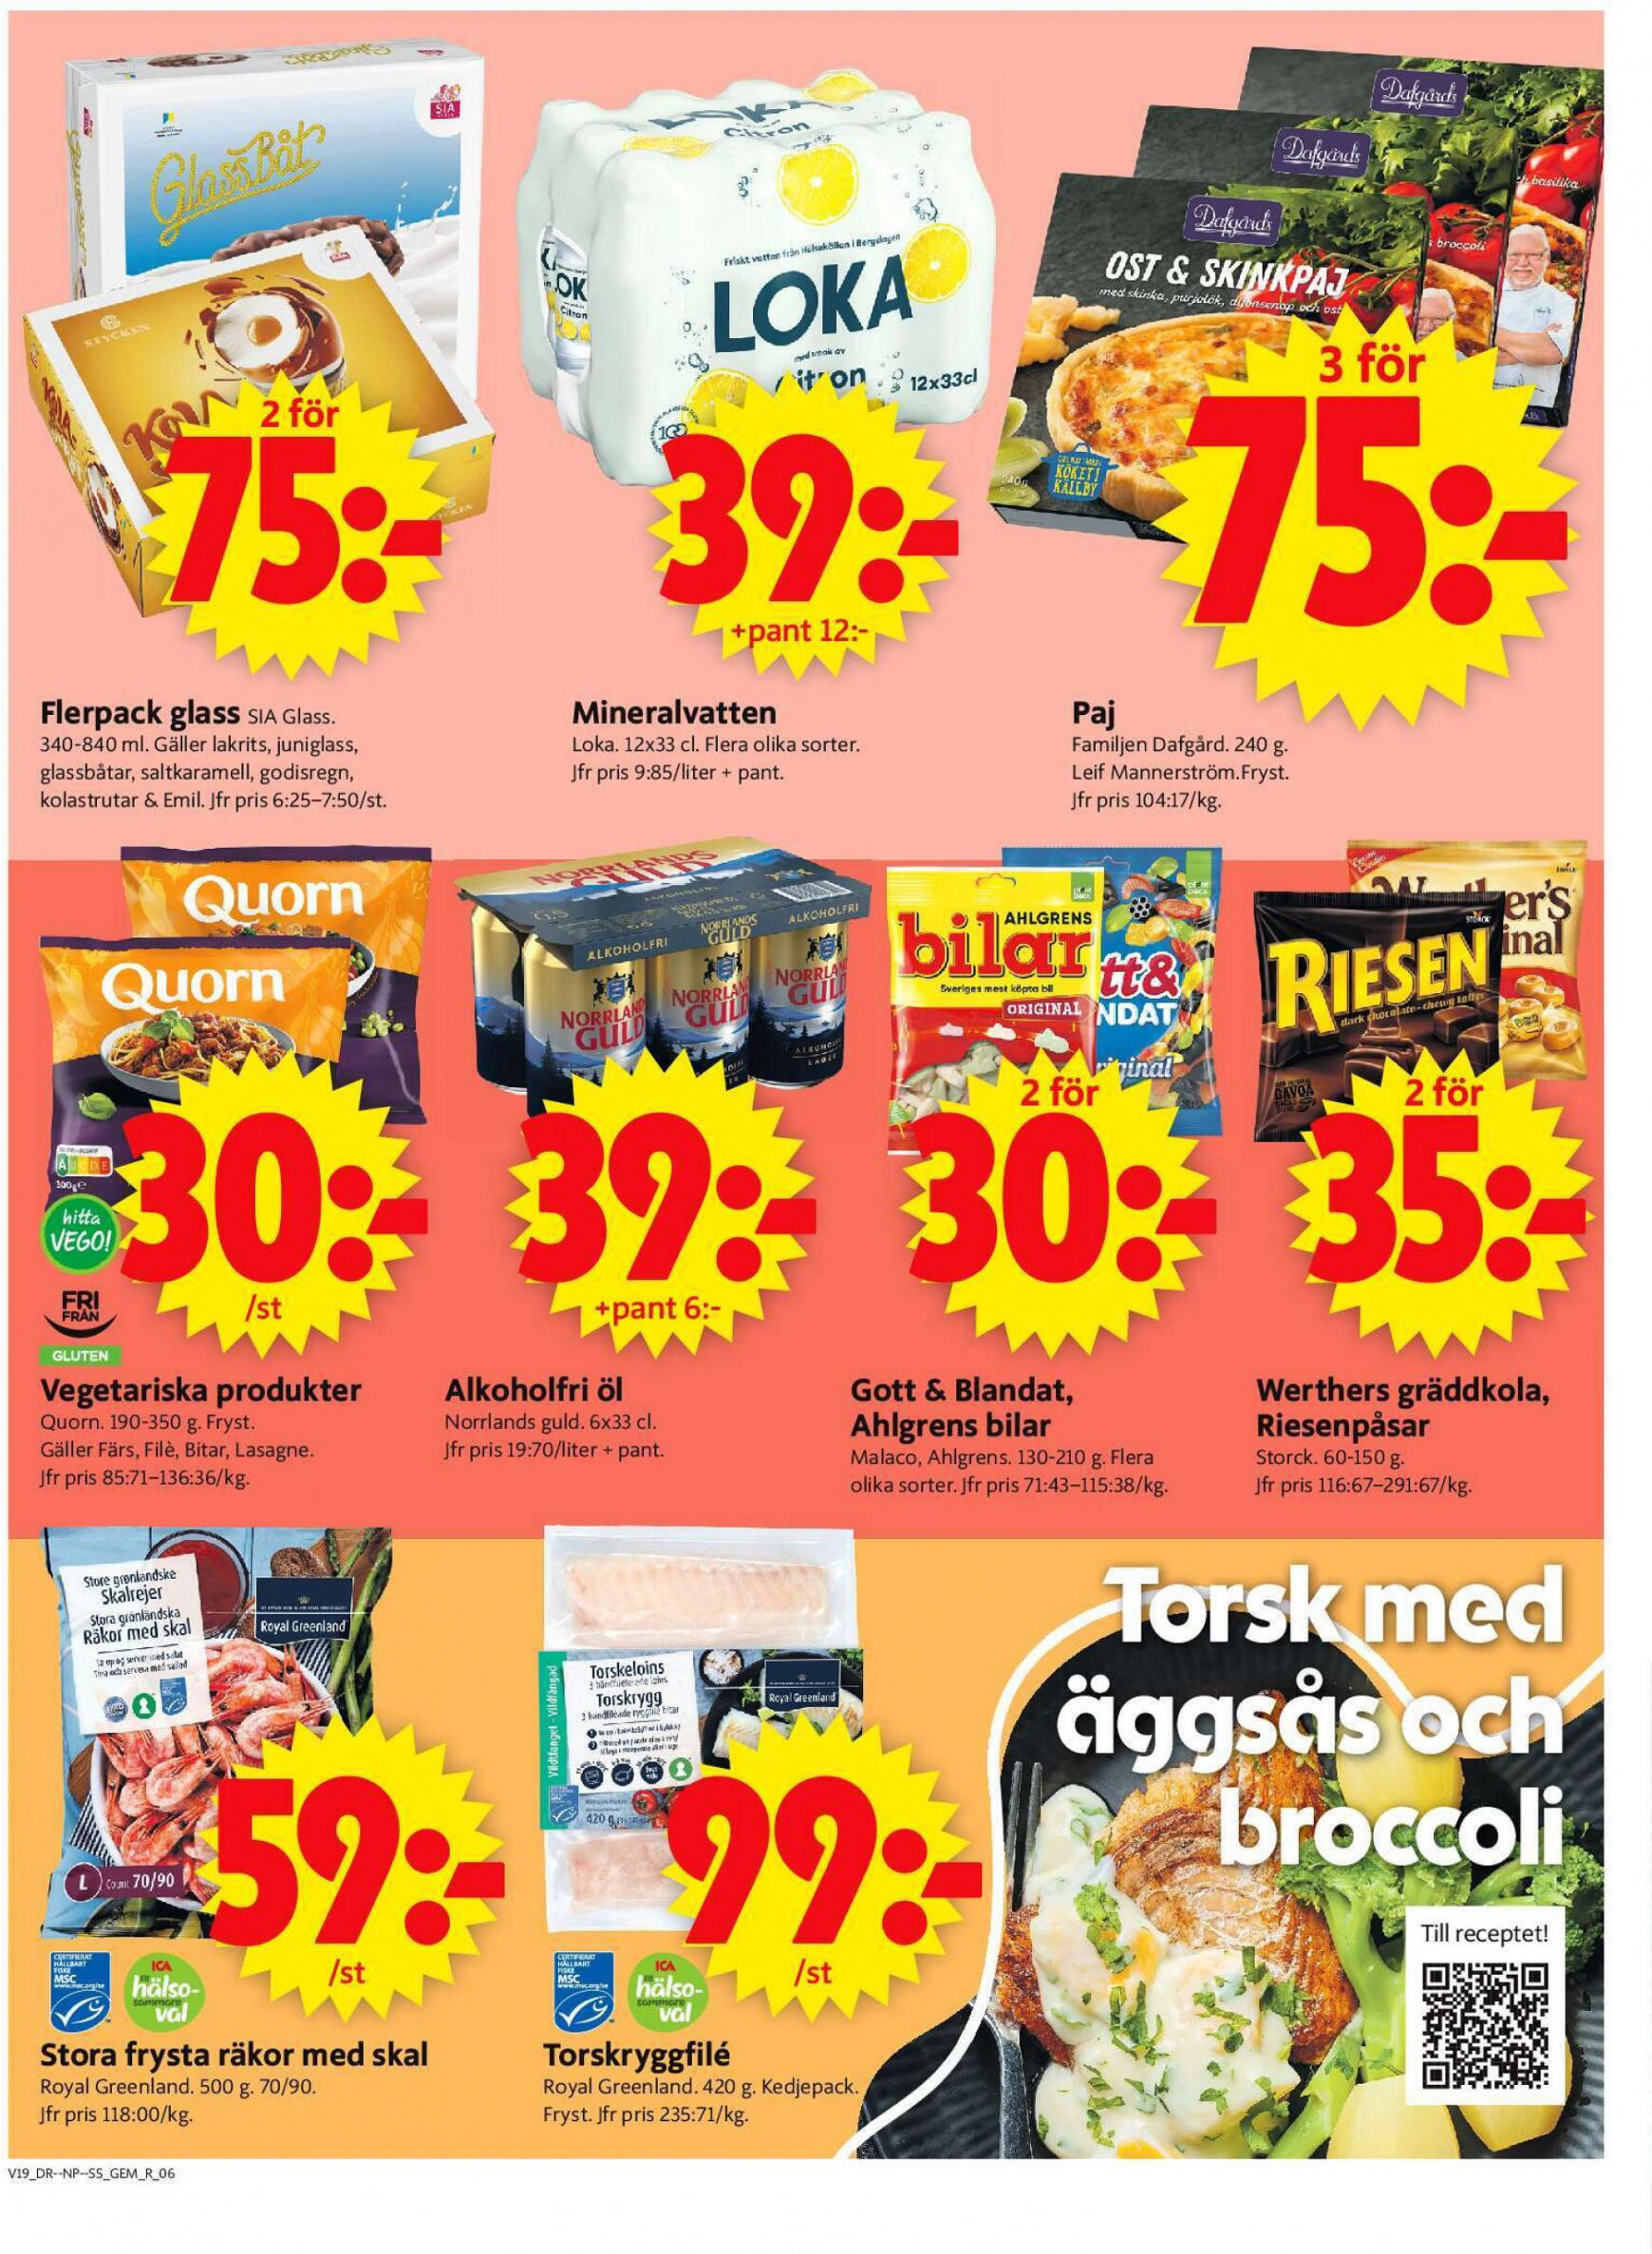 ica-supermarket - Flyer ICA Supermarket current 06.05. - 12.05. - page: 8